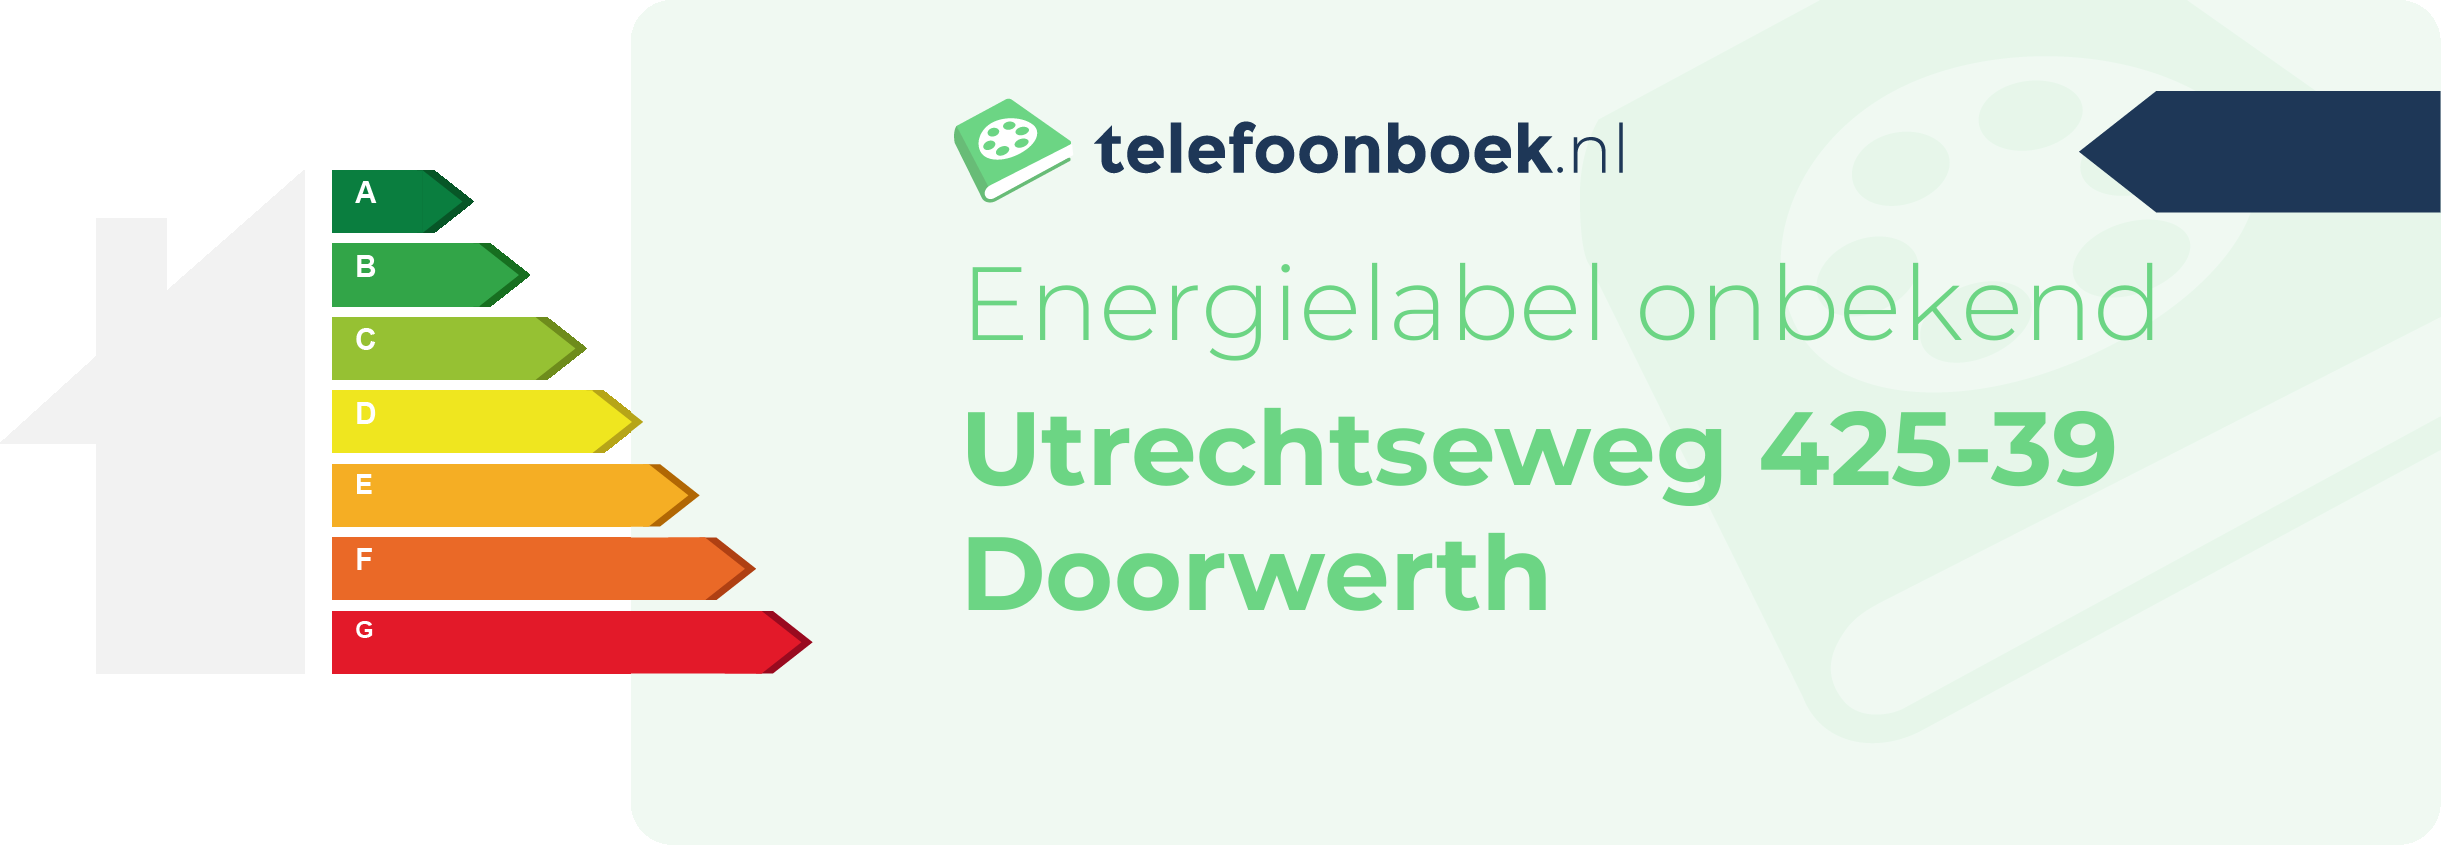 Energielabel Utrechtseweg 425-39 Doorwerth